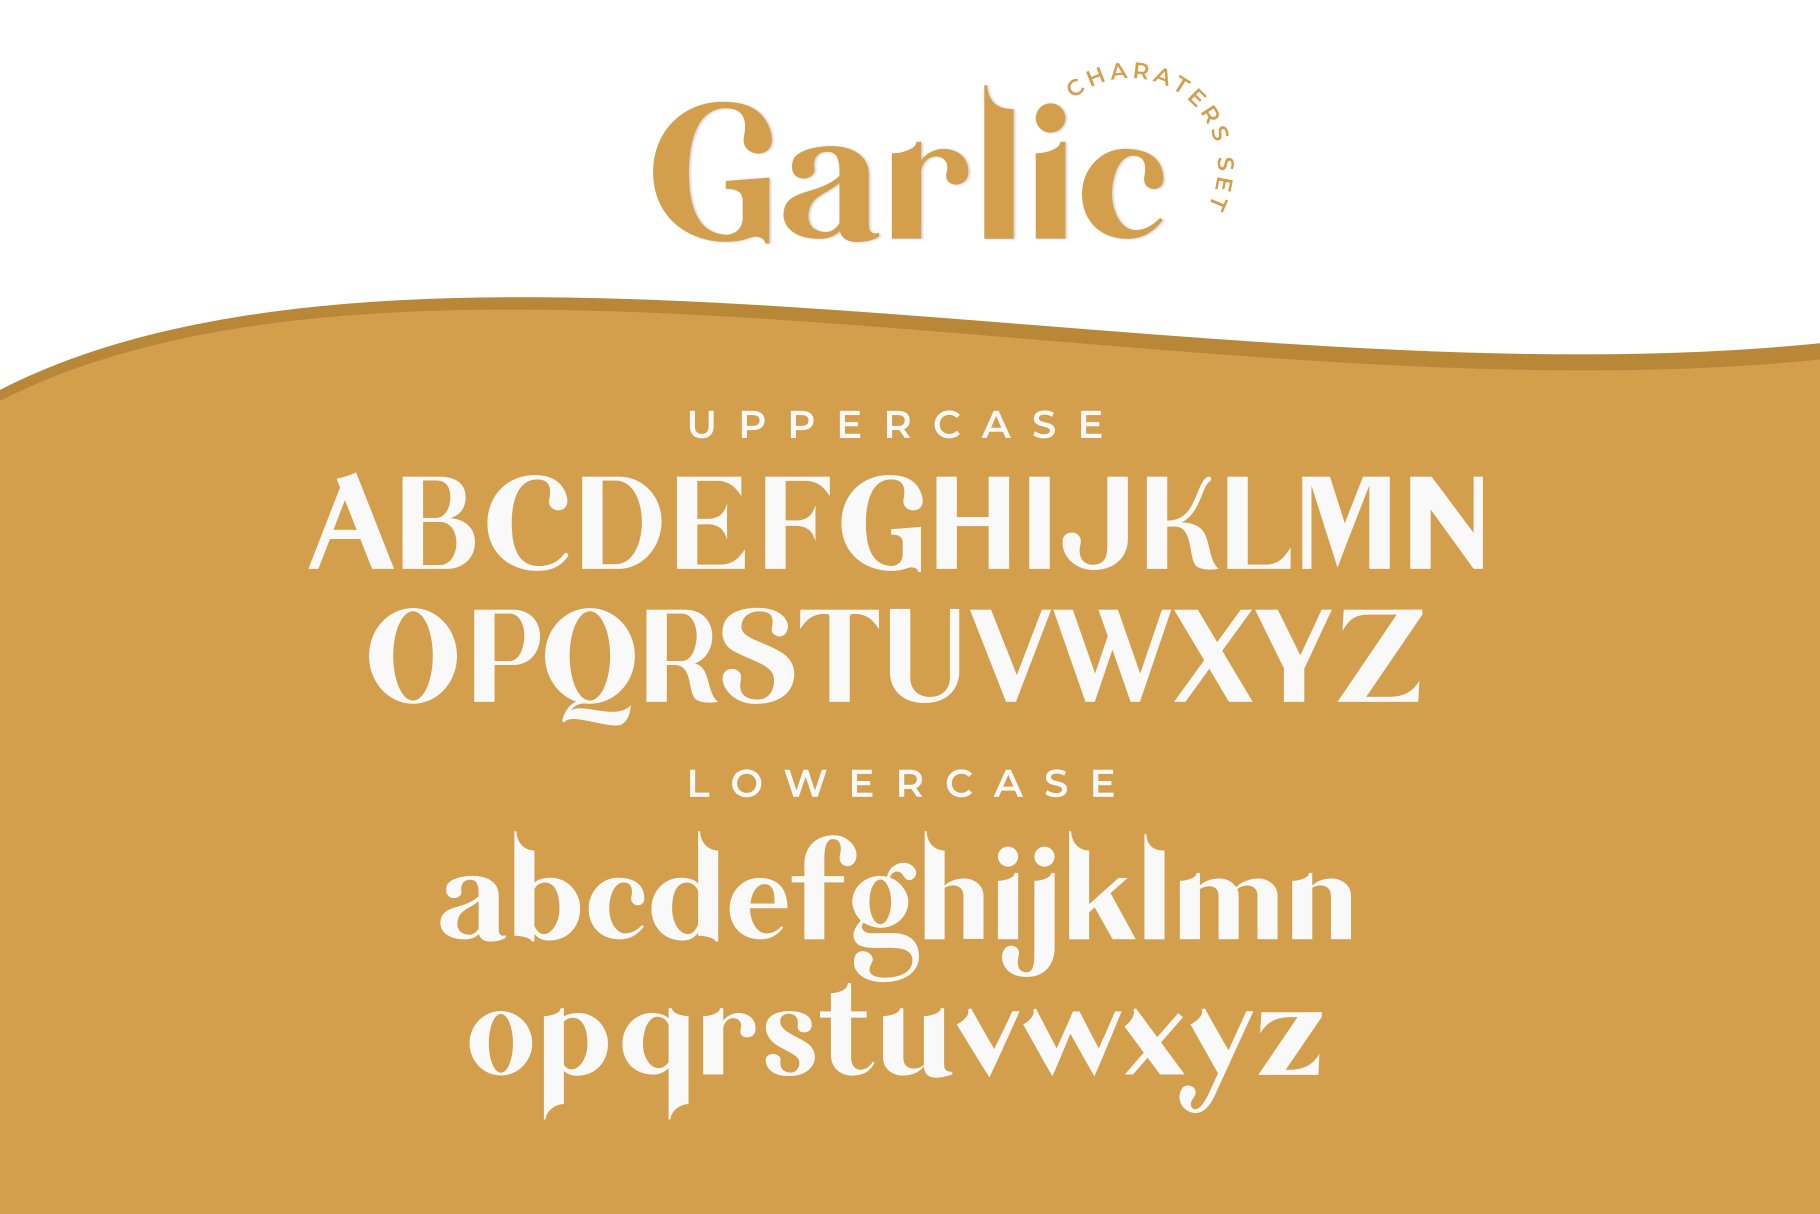 优雅的无衬线体英文字体 Garlic / elegant f